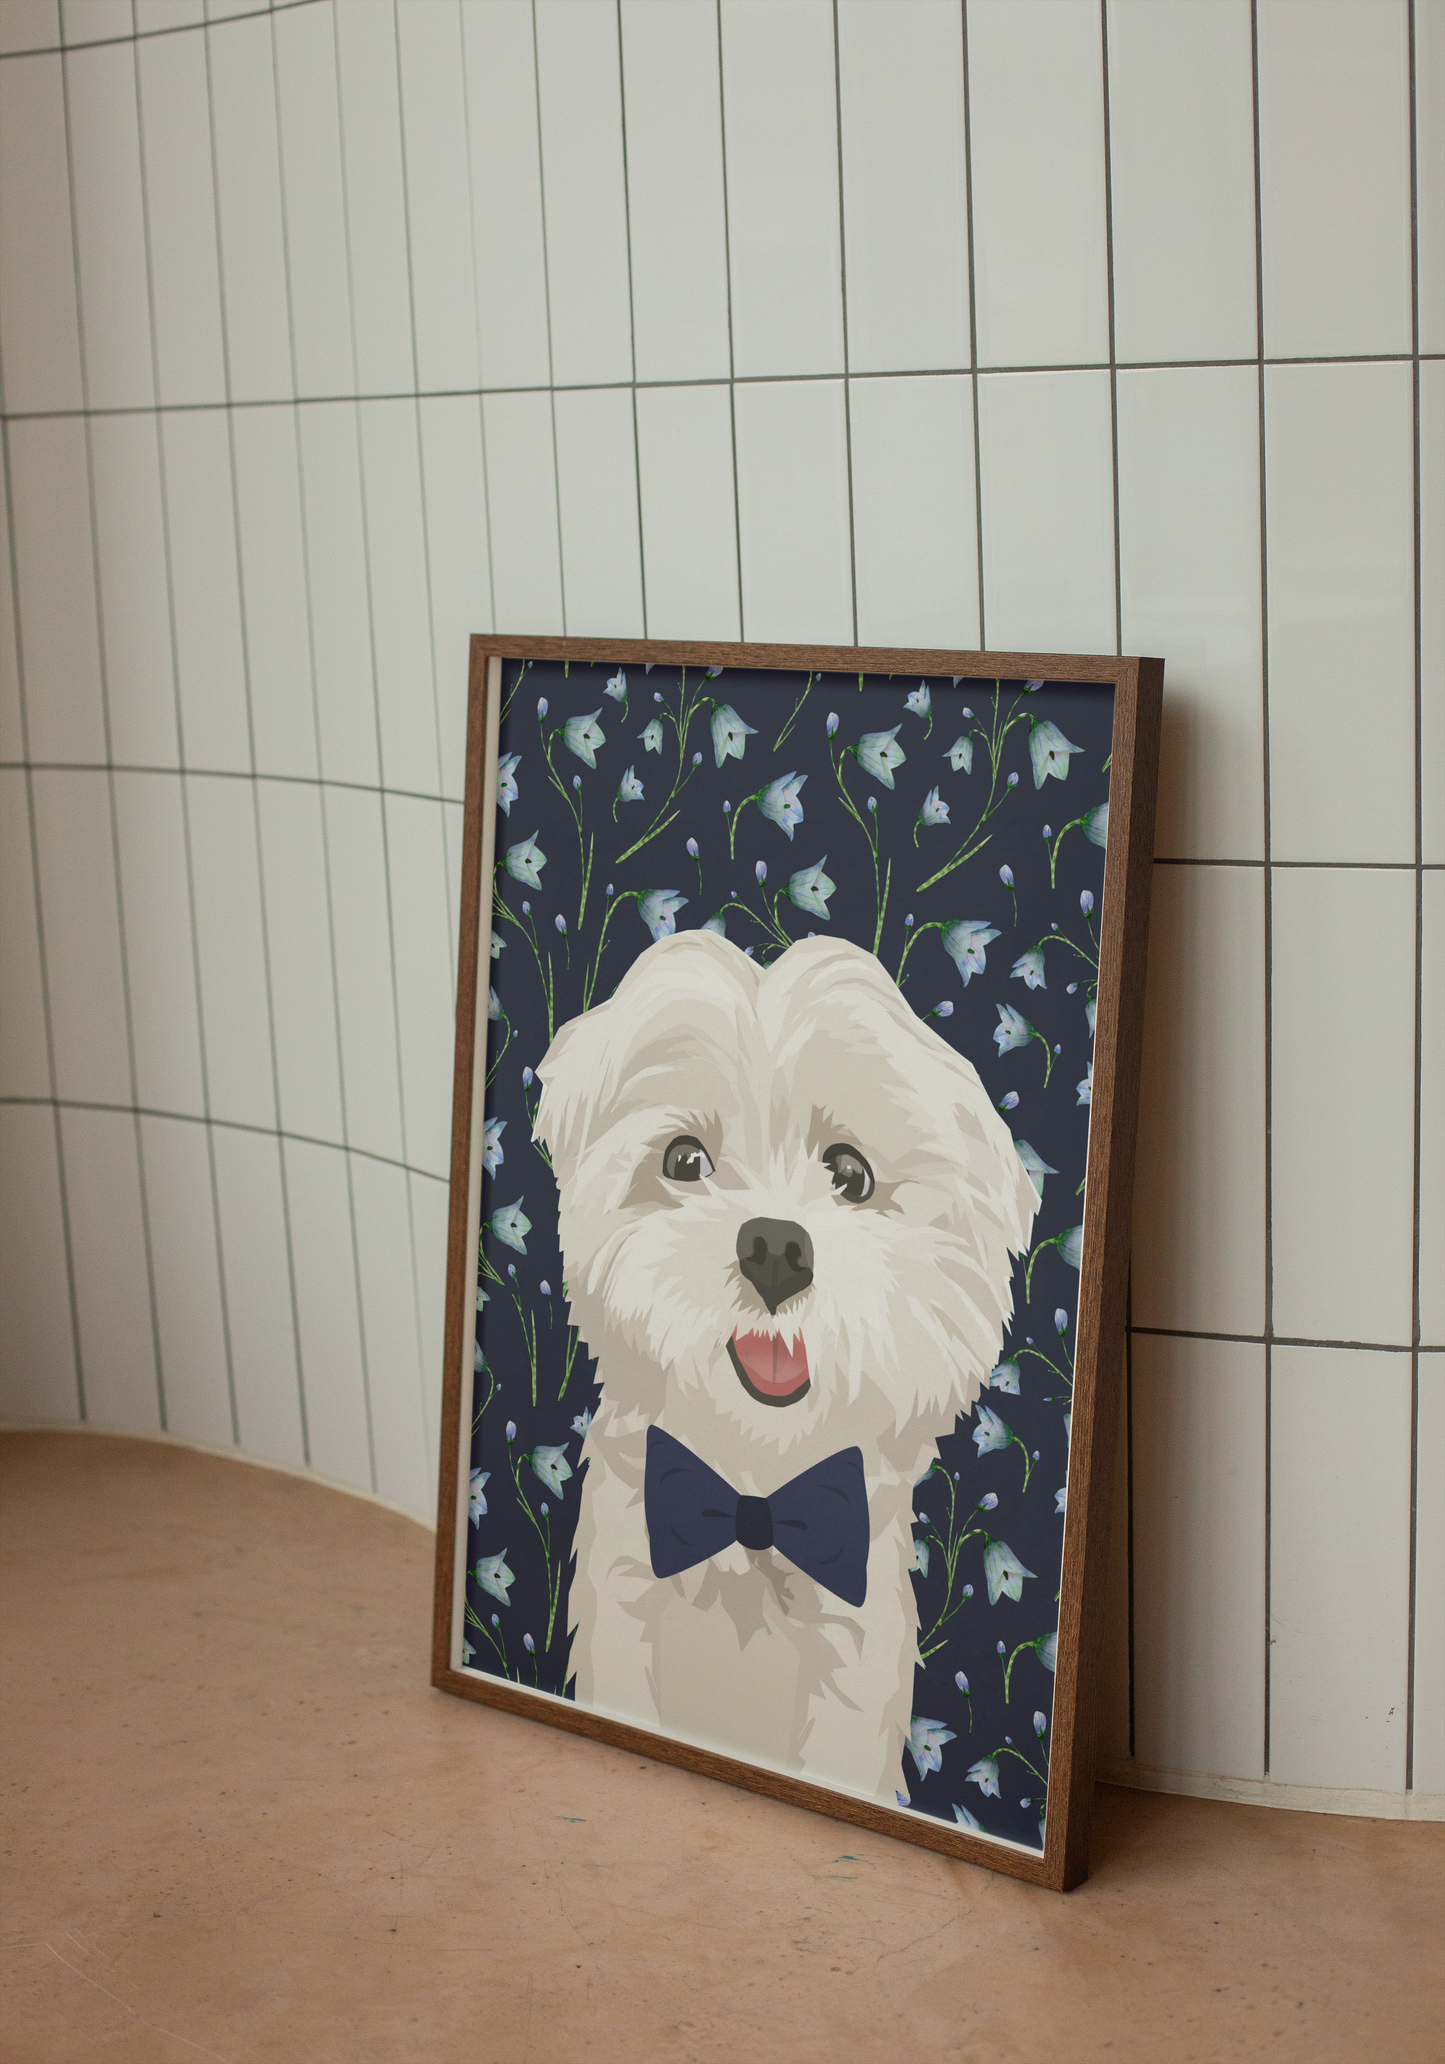 Maltese Puppy in Bowtie Art Print